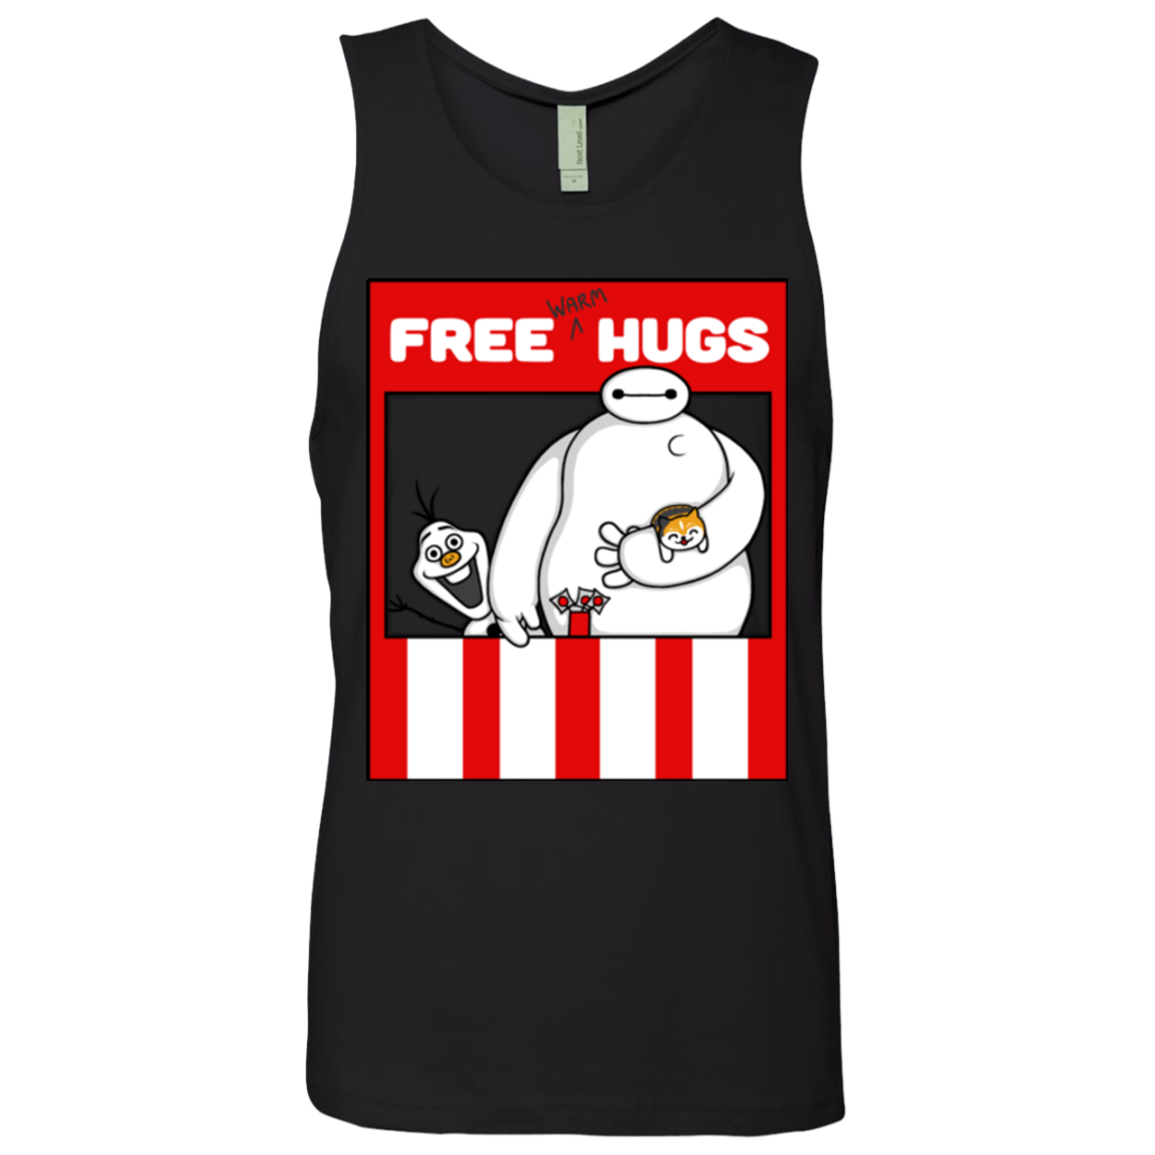 Free Hugs Men's Premium Tank Top